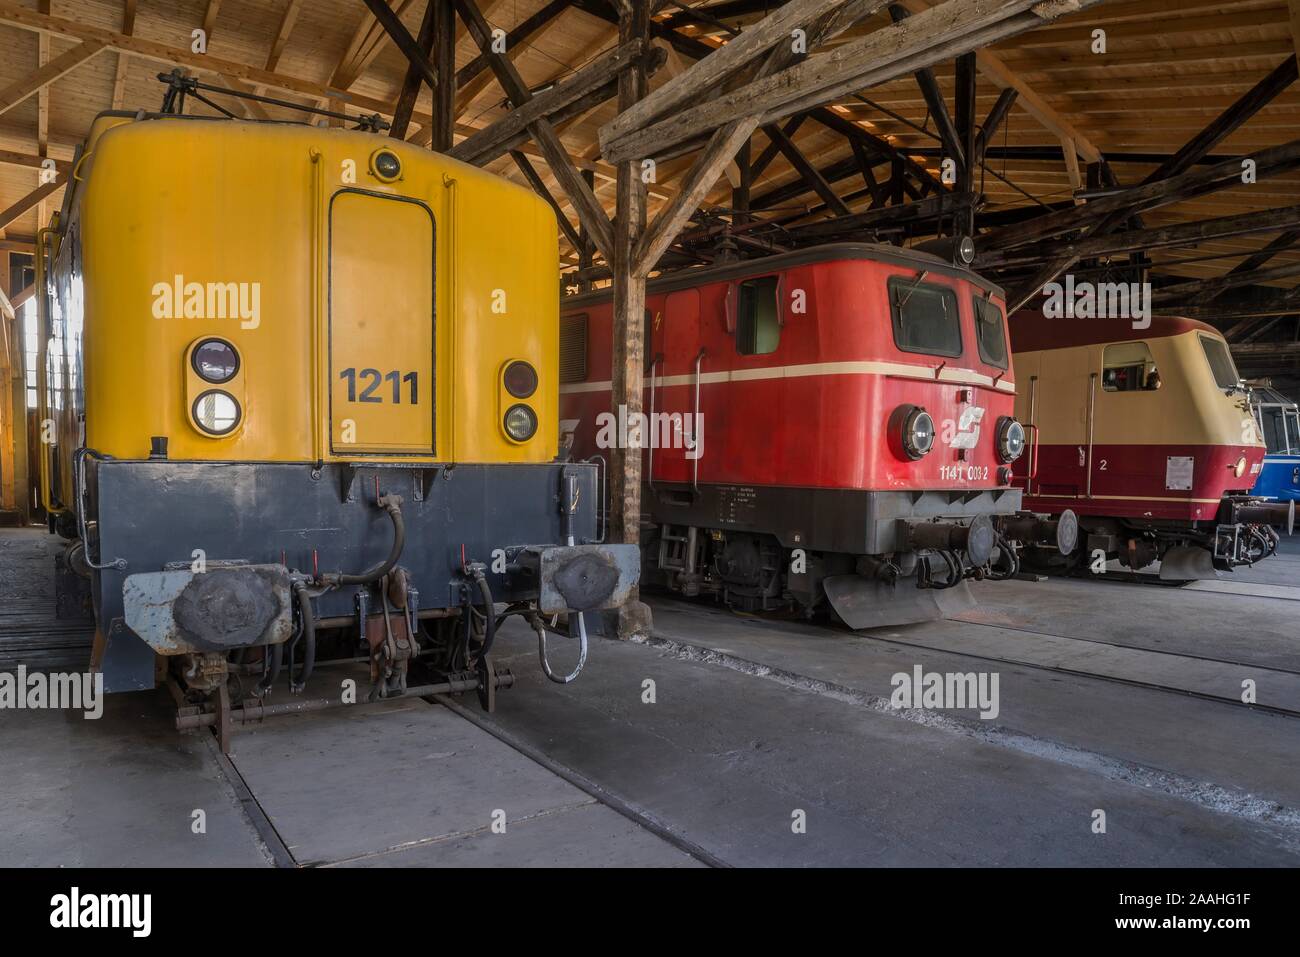 Locomotive internazionale, da sinistra a destra, olandese locomotore elettrico 1211, OBB in doppia frequenza locomotiva, 1957, DB AG locomotore elettrico, classe Foto Stock